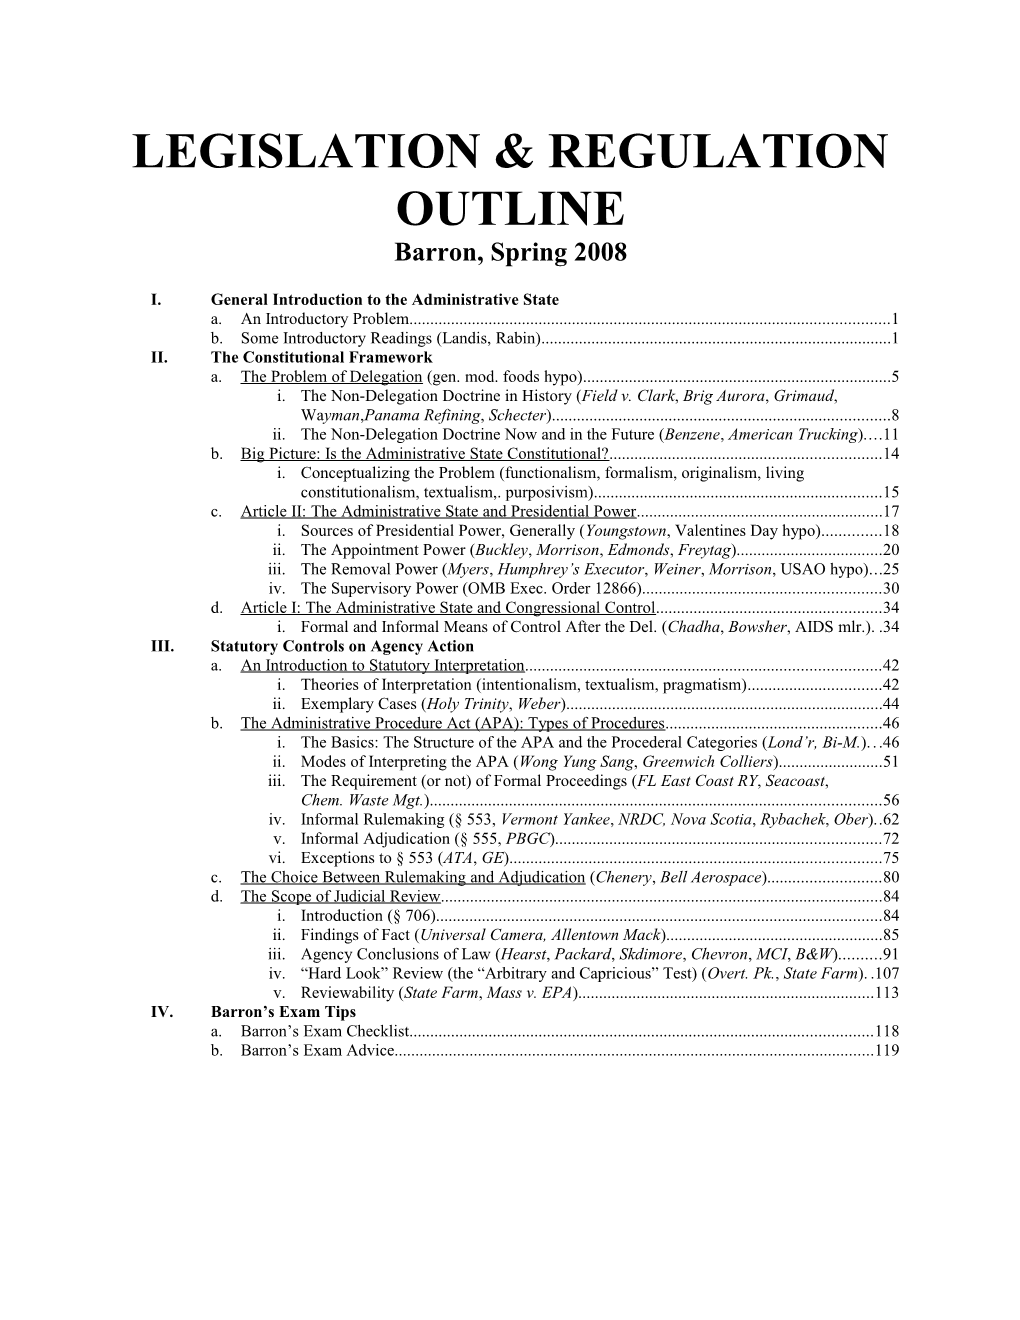 Legislation and Regulation Outline